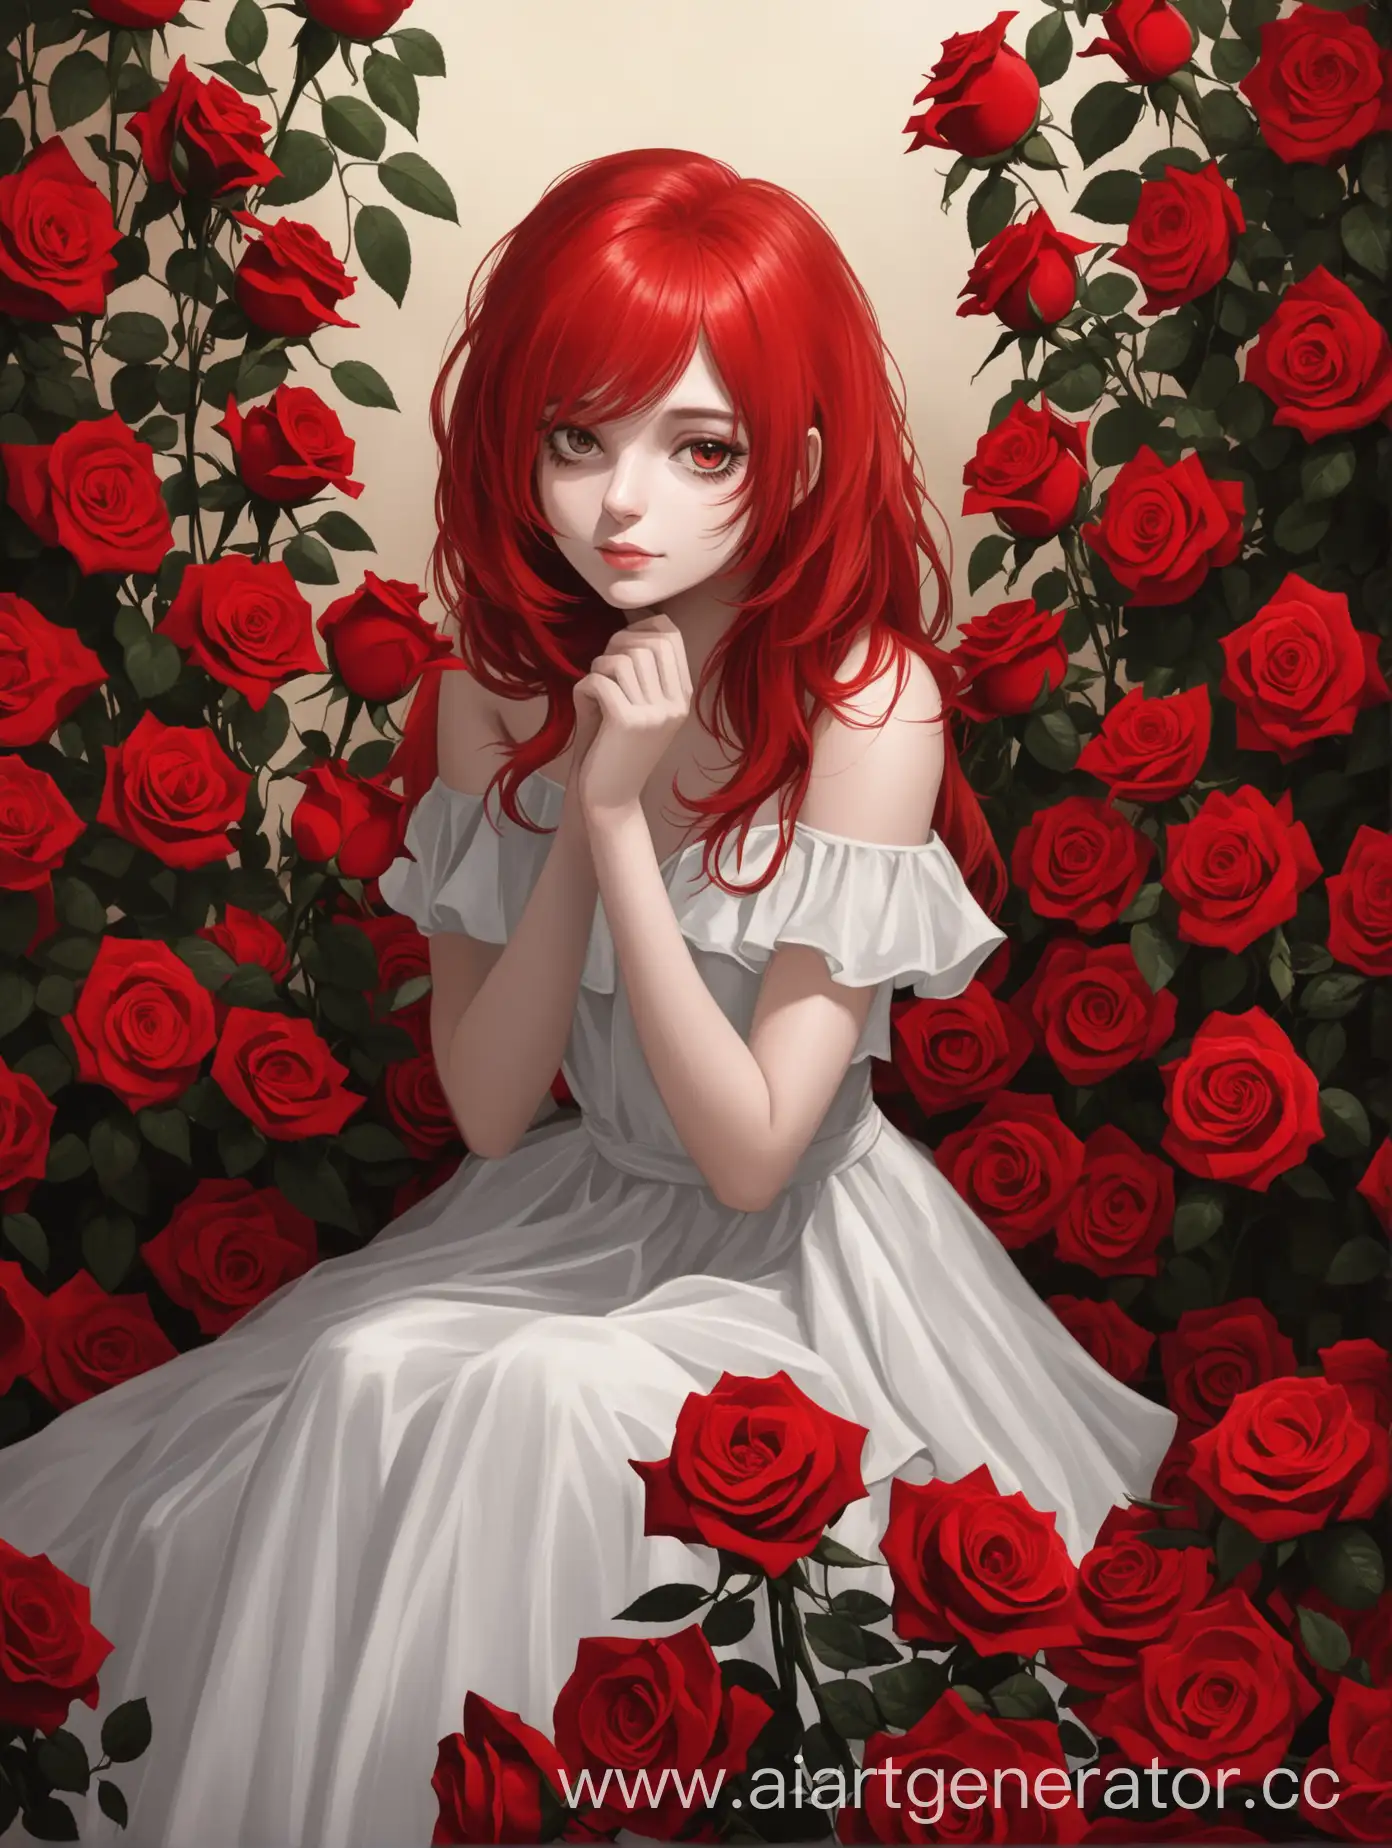 девушка с красными волосами сидит в красных розах